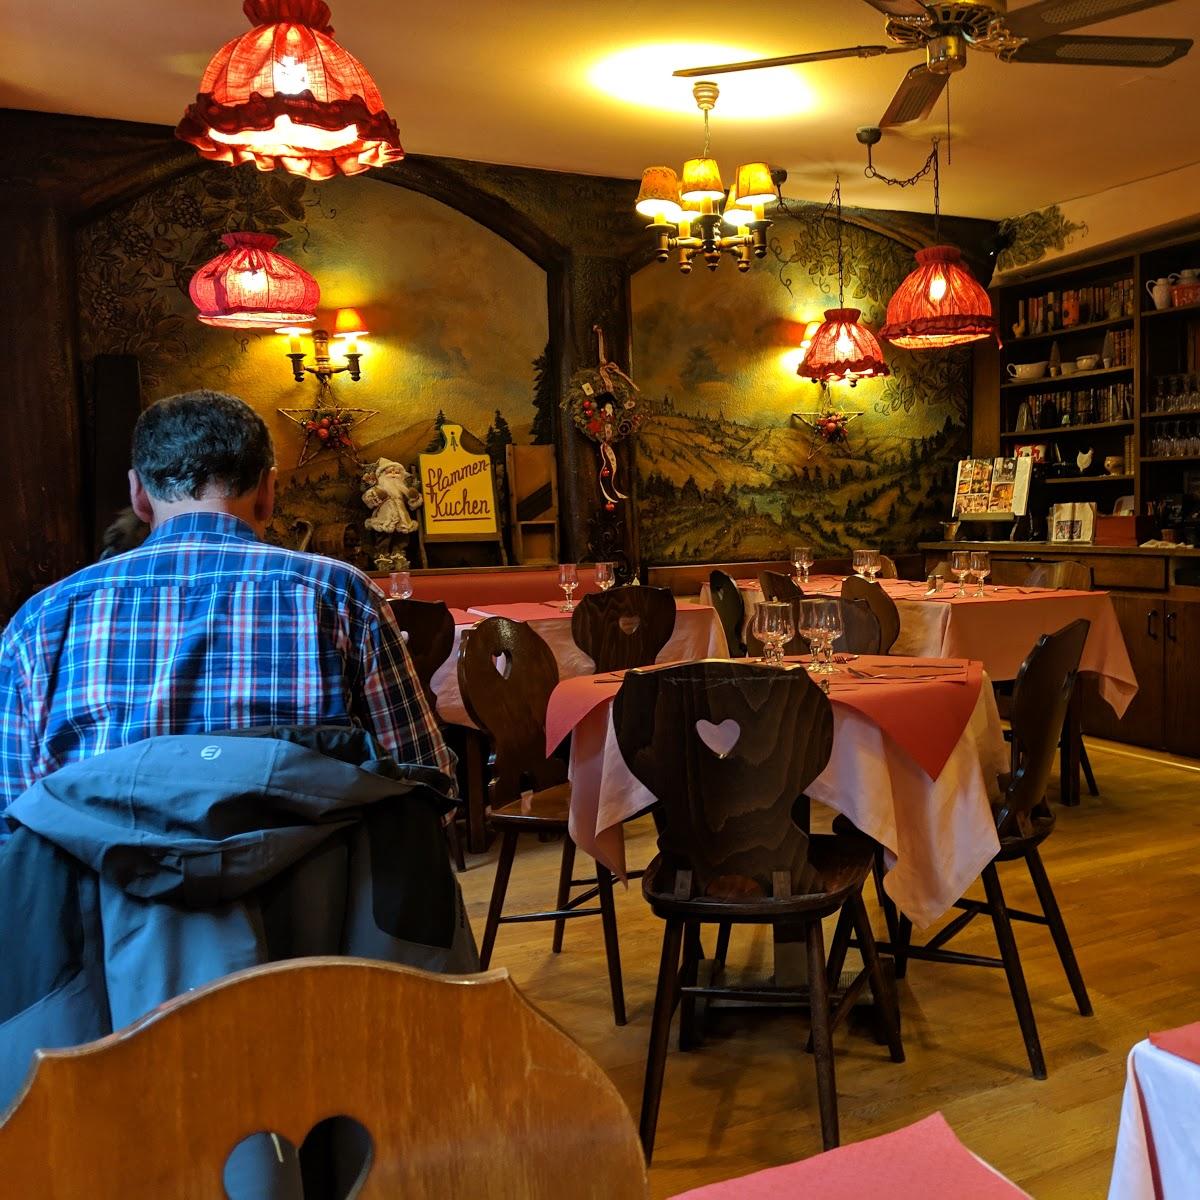 Restaurant "Au Vieux" in Strasbourg